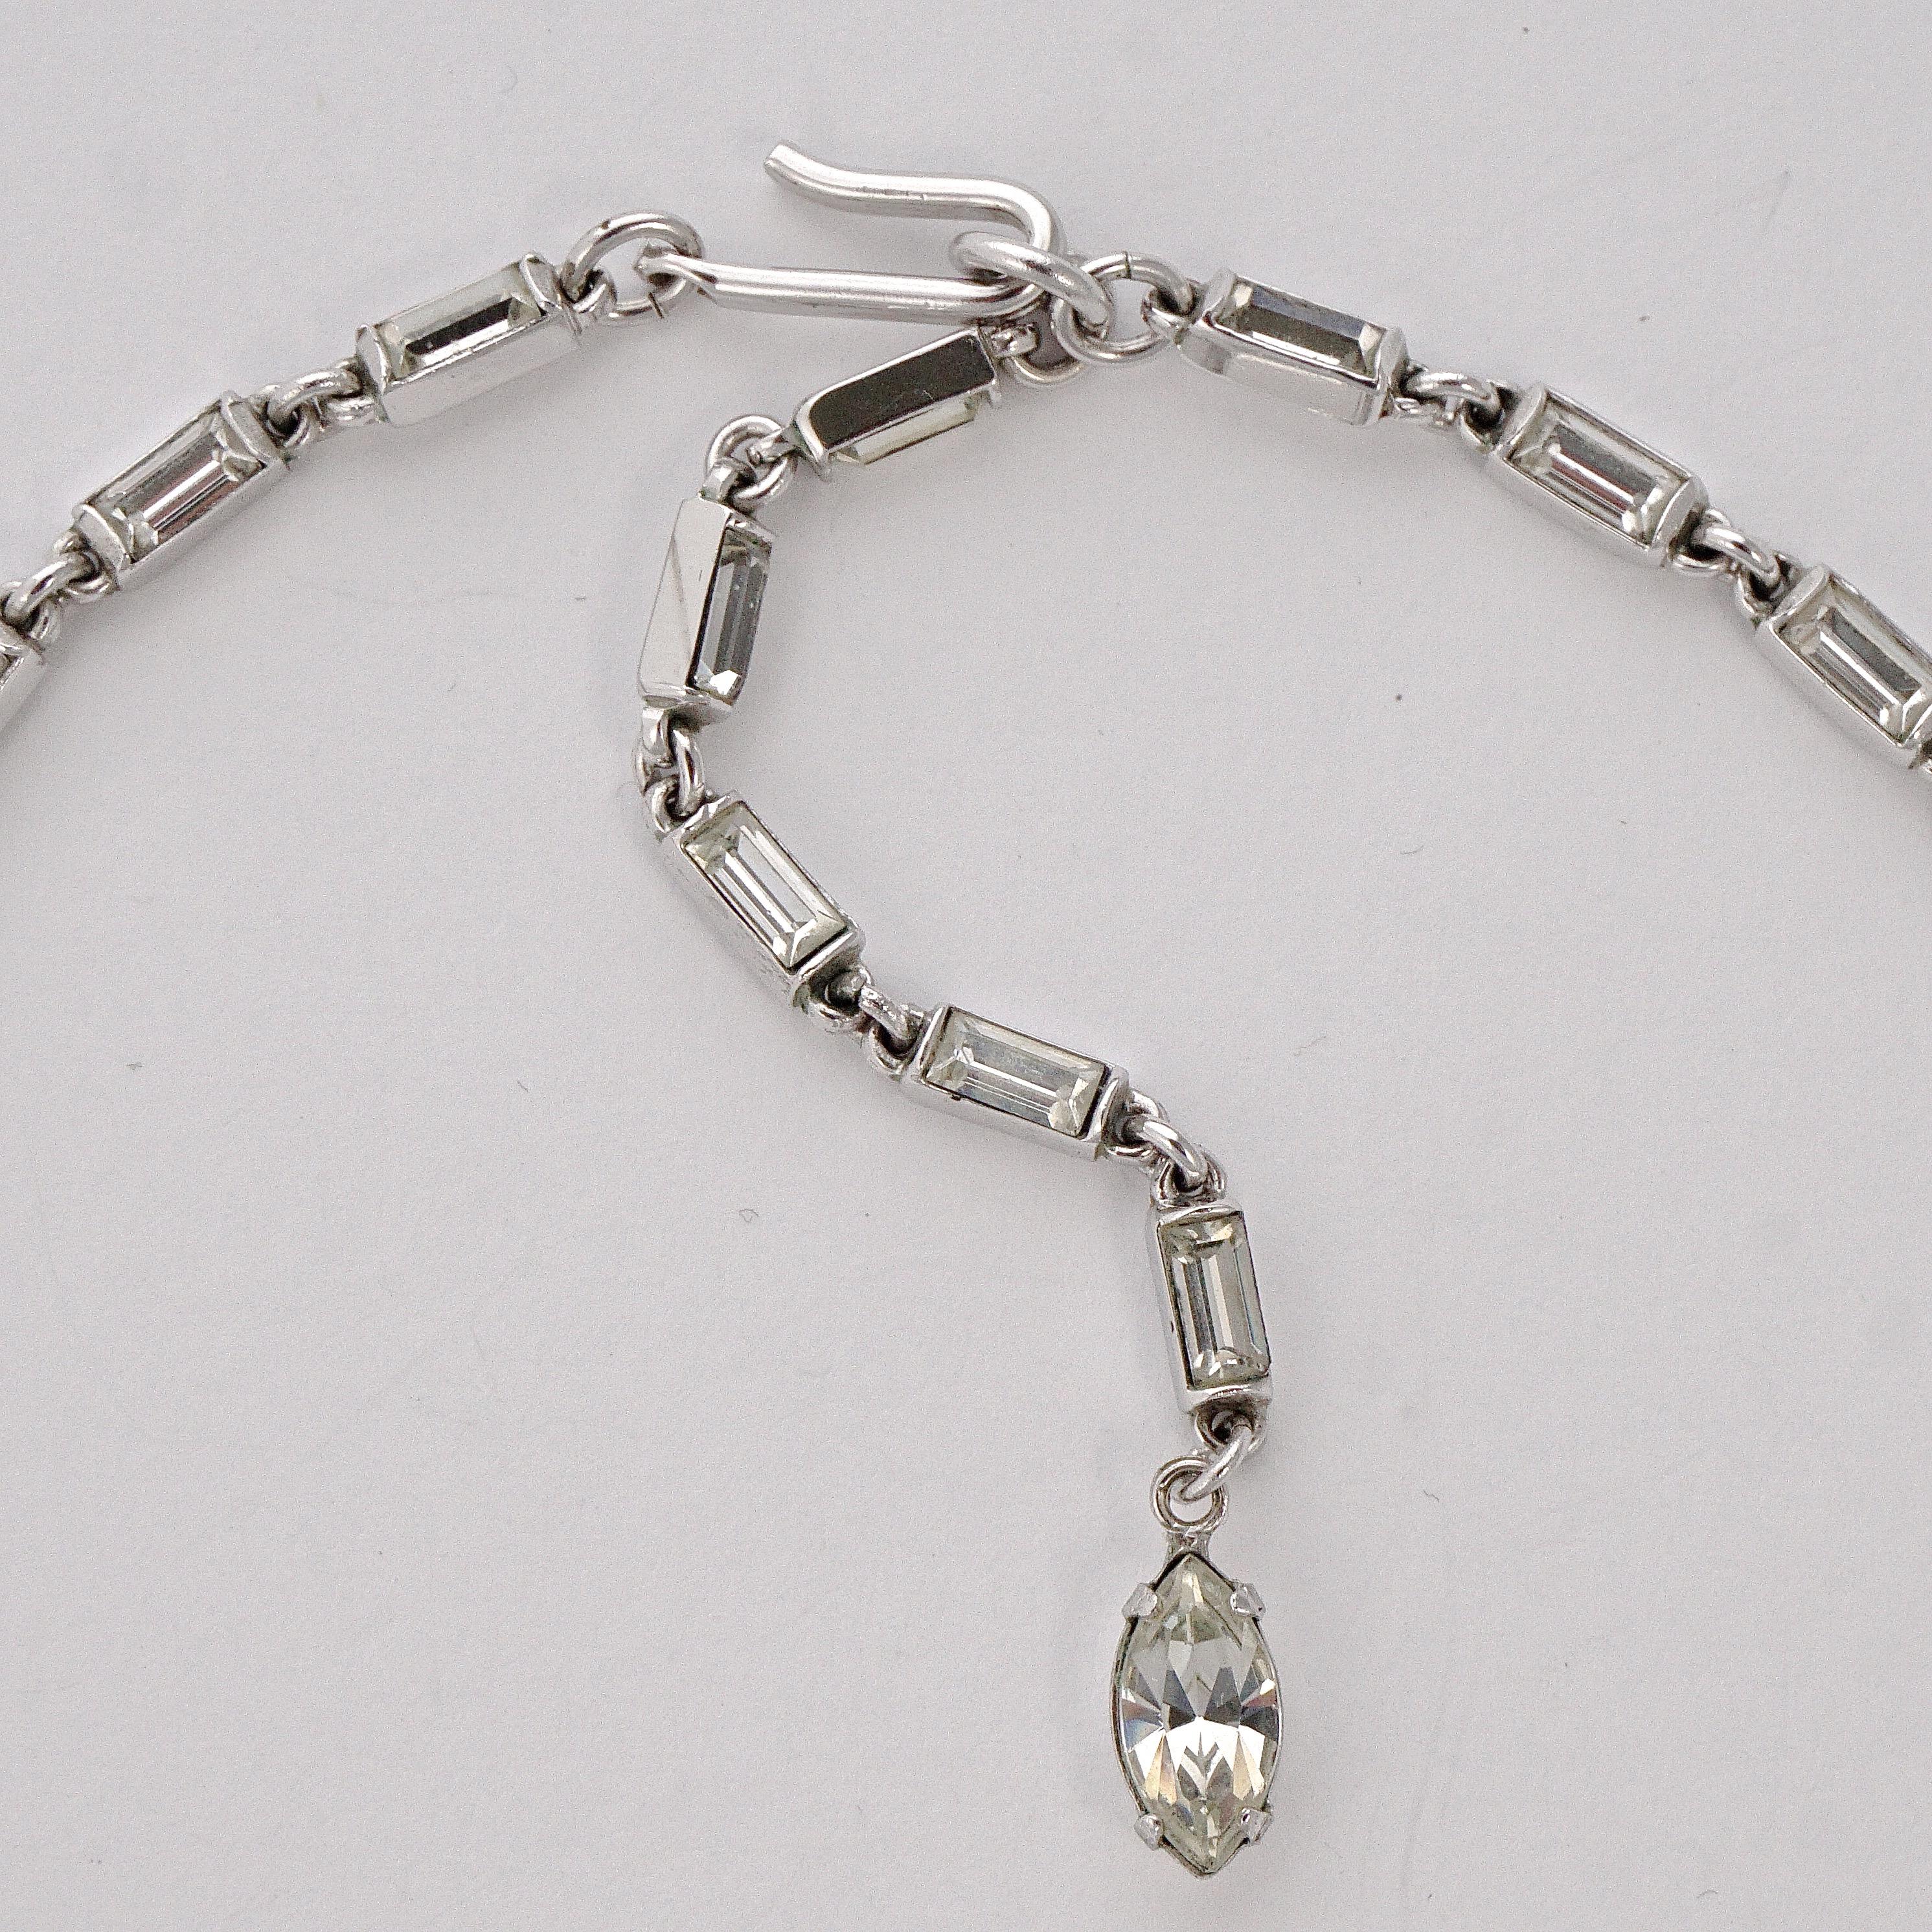 Trifari Silver Tone Rhinestone Tremblant Pendant and Necklace circa 1950s In Good Condition For Sale In London, GB